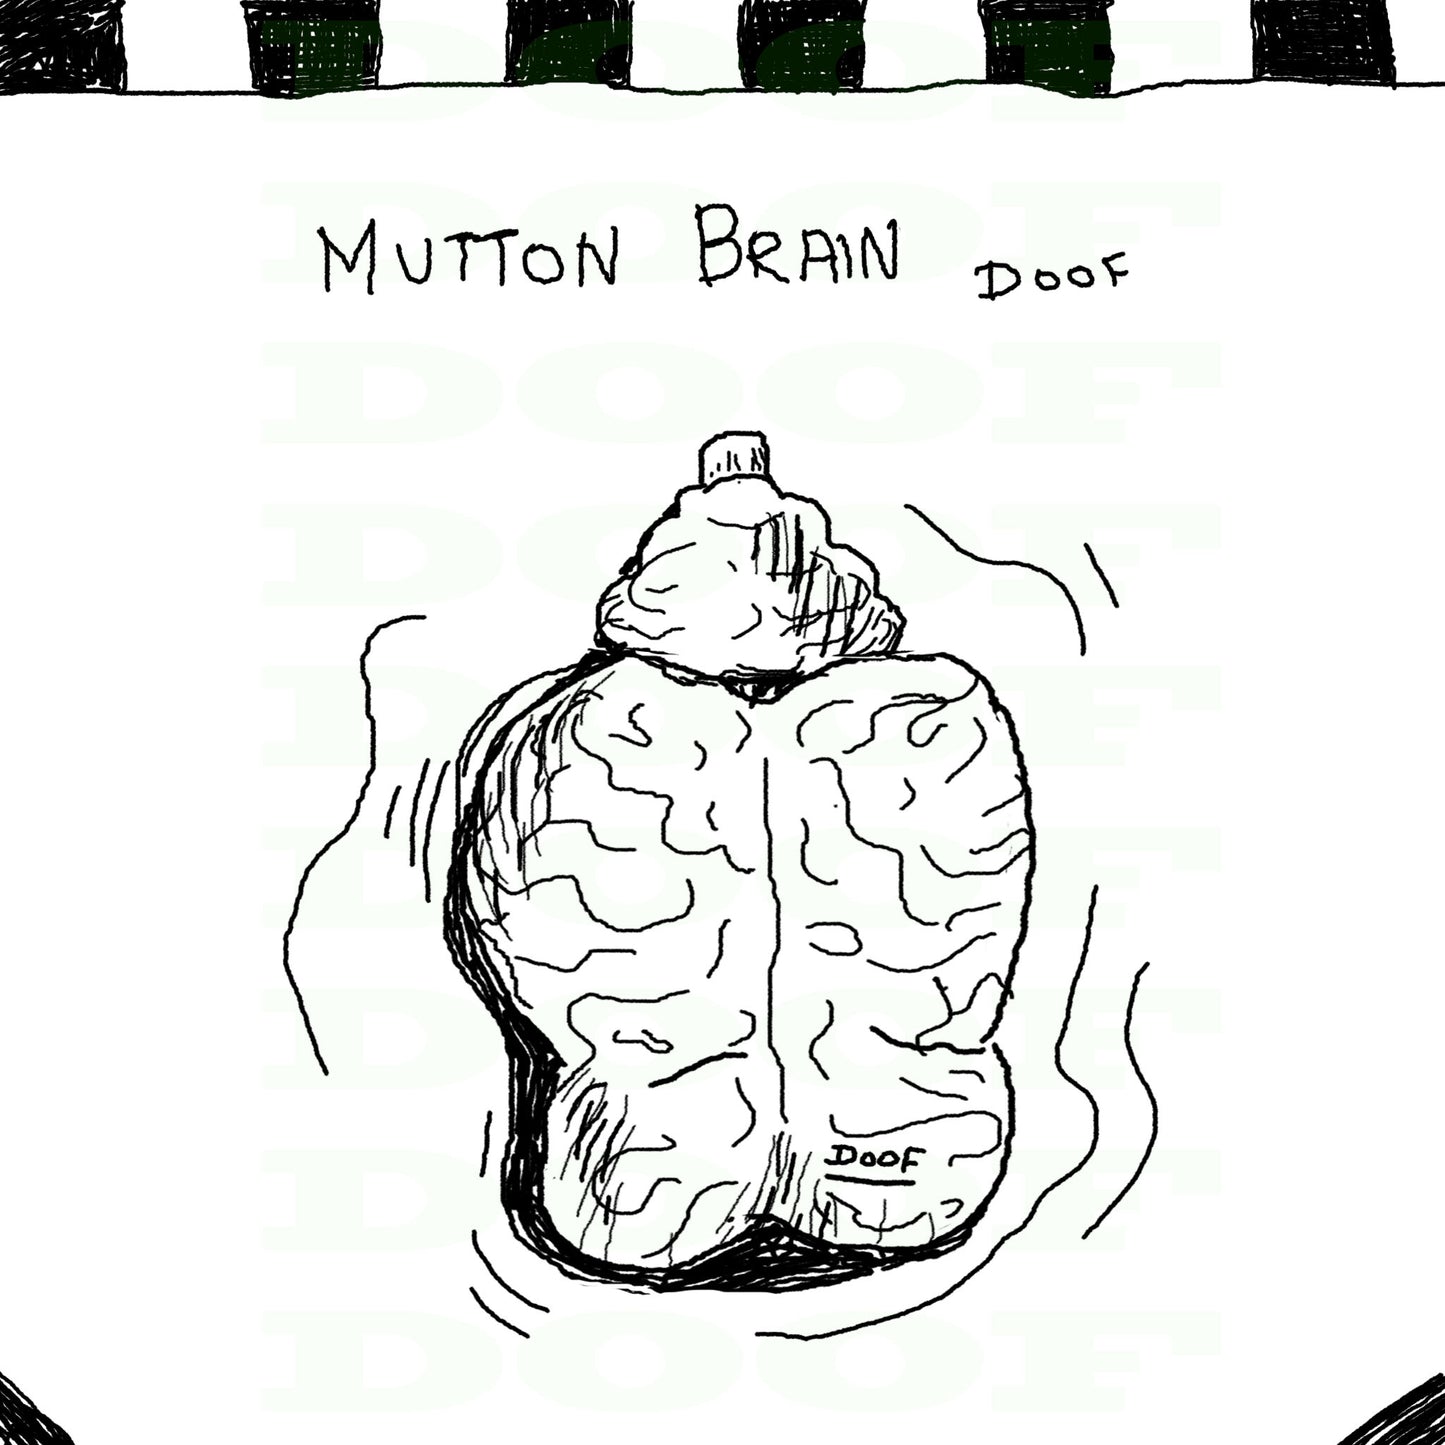 Mutton brain Doof sketch